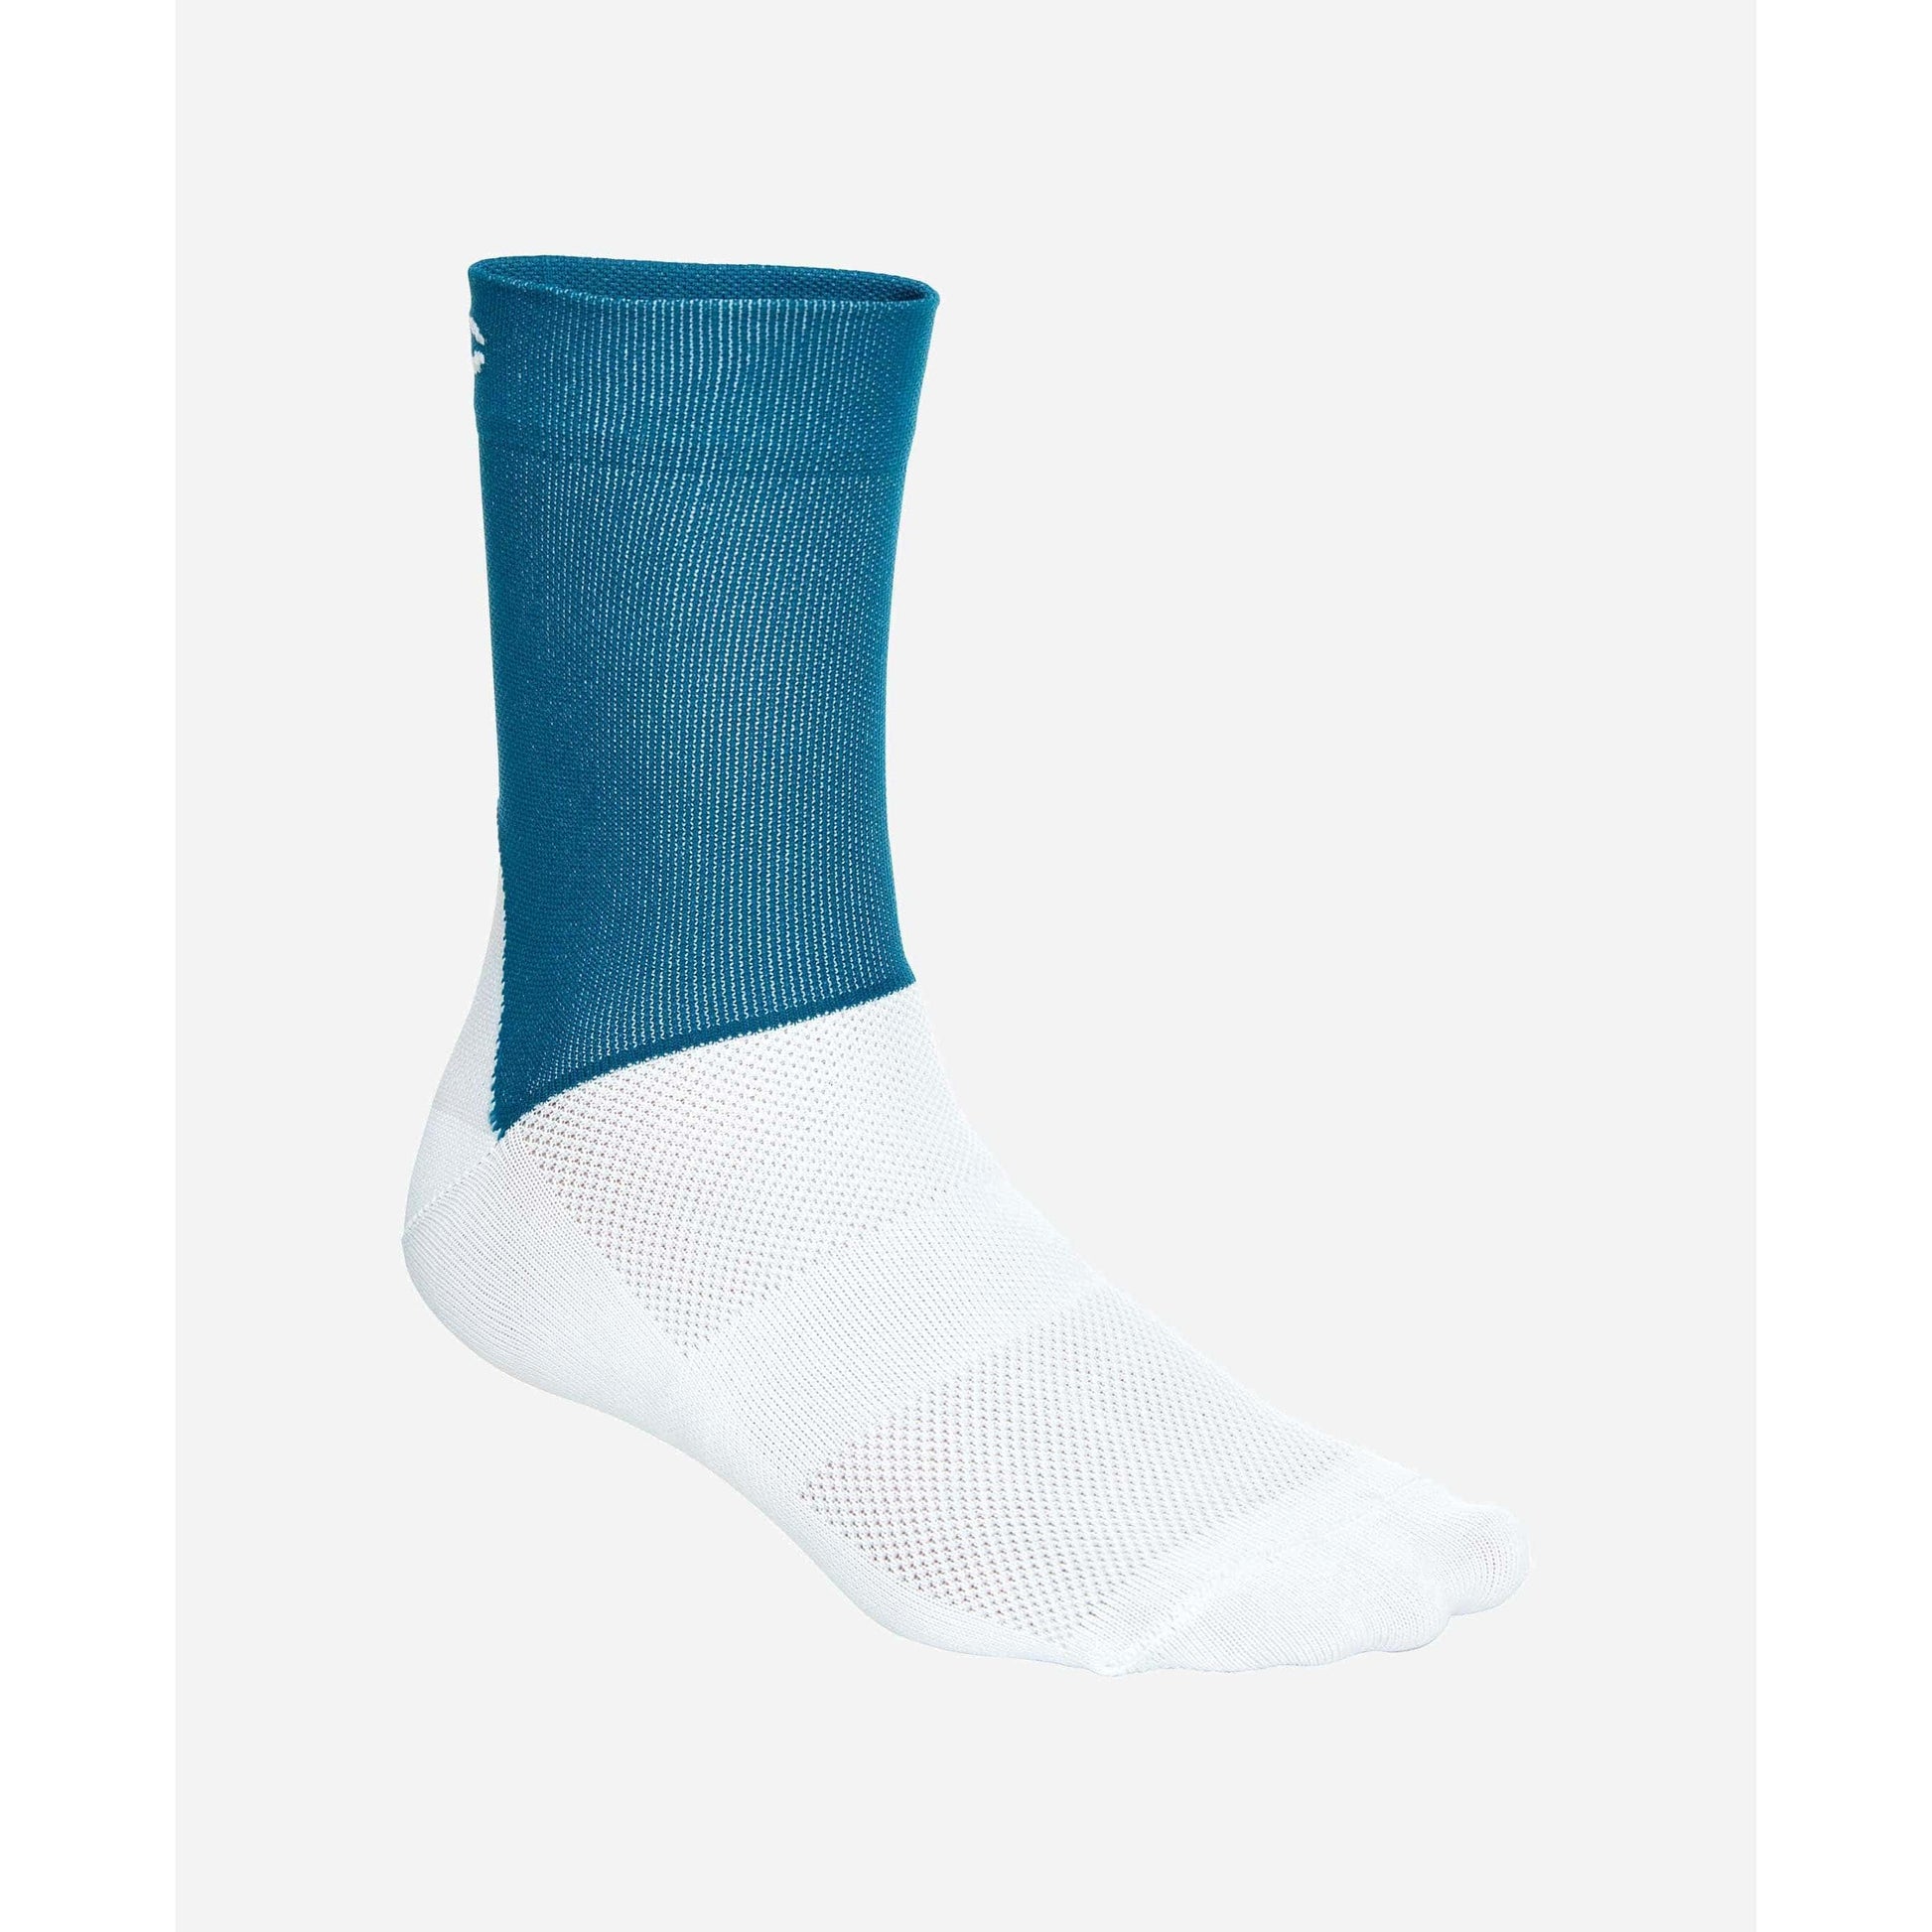 ソックス Essential Road Socks - Draconis Blue/Hydrogen White [ユニセックス] 65110-8244 - STYLE BIKE ONLINE SHOP